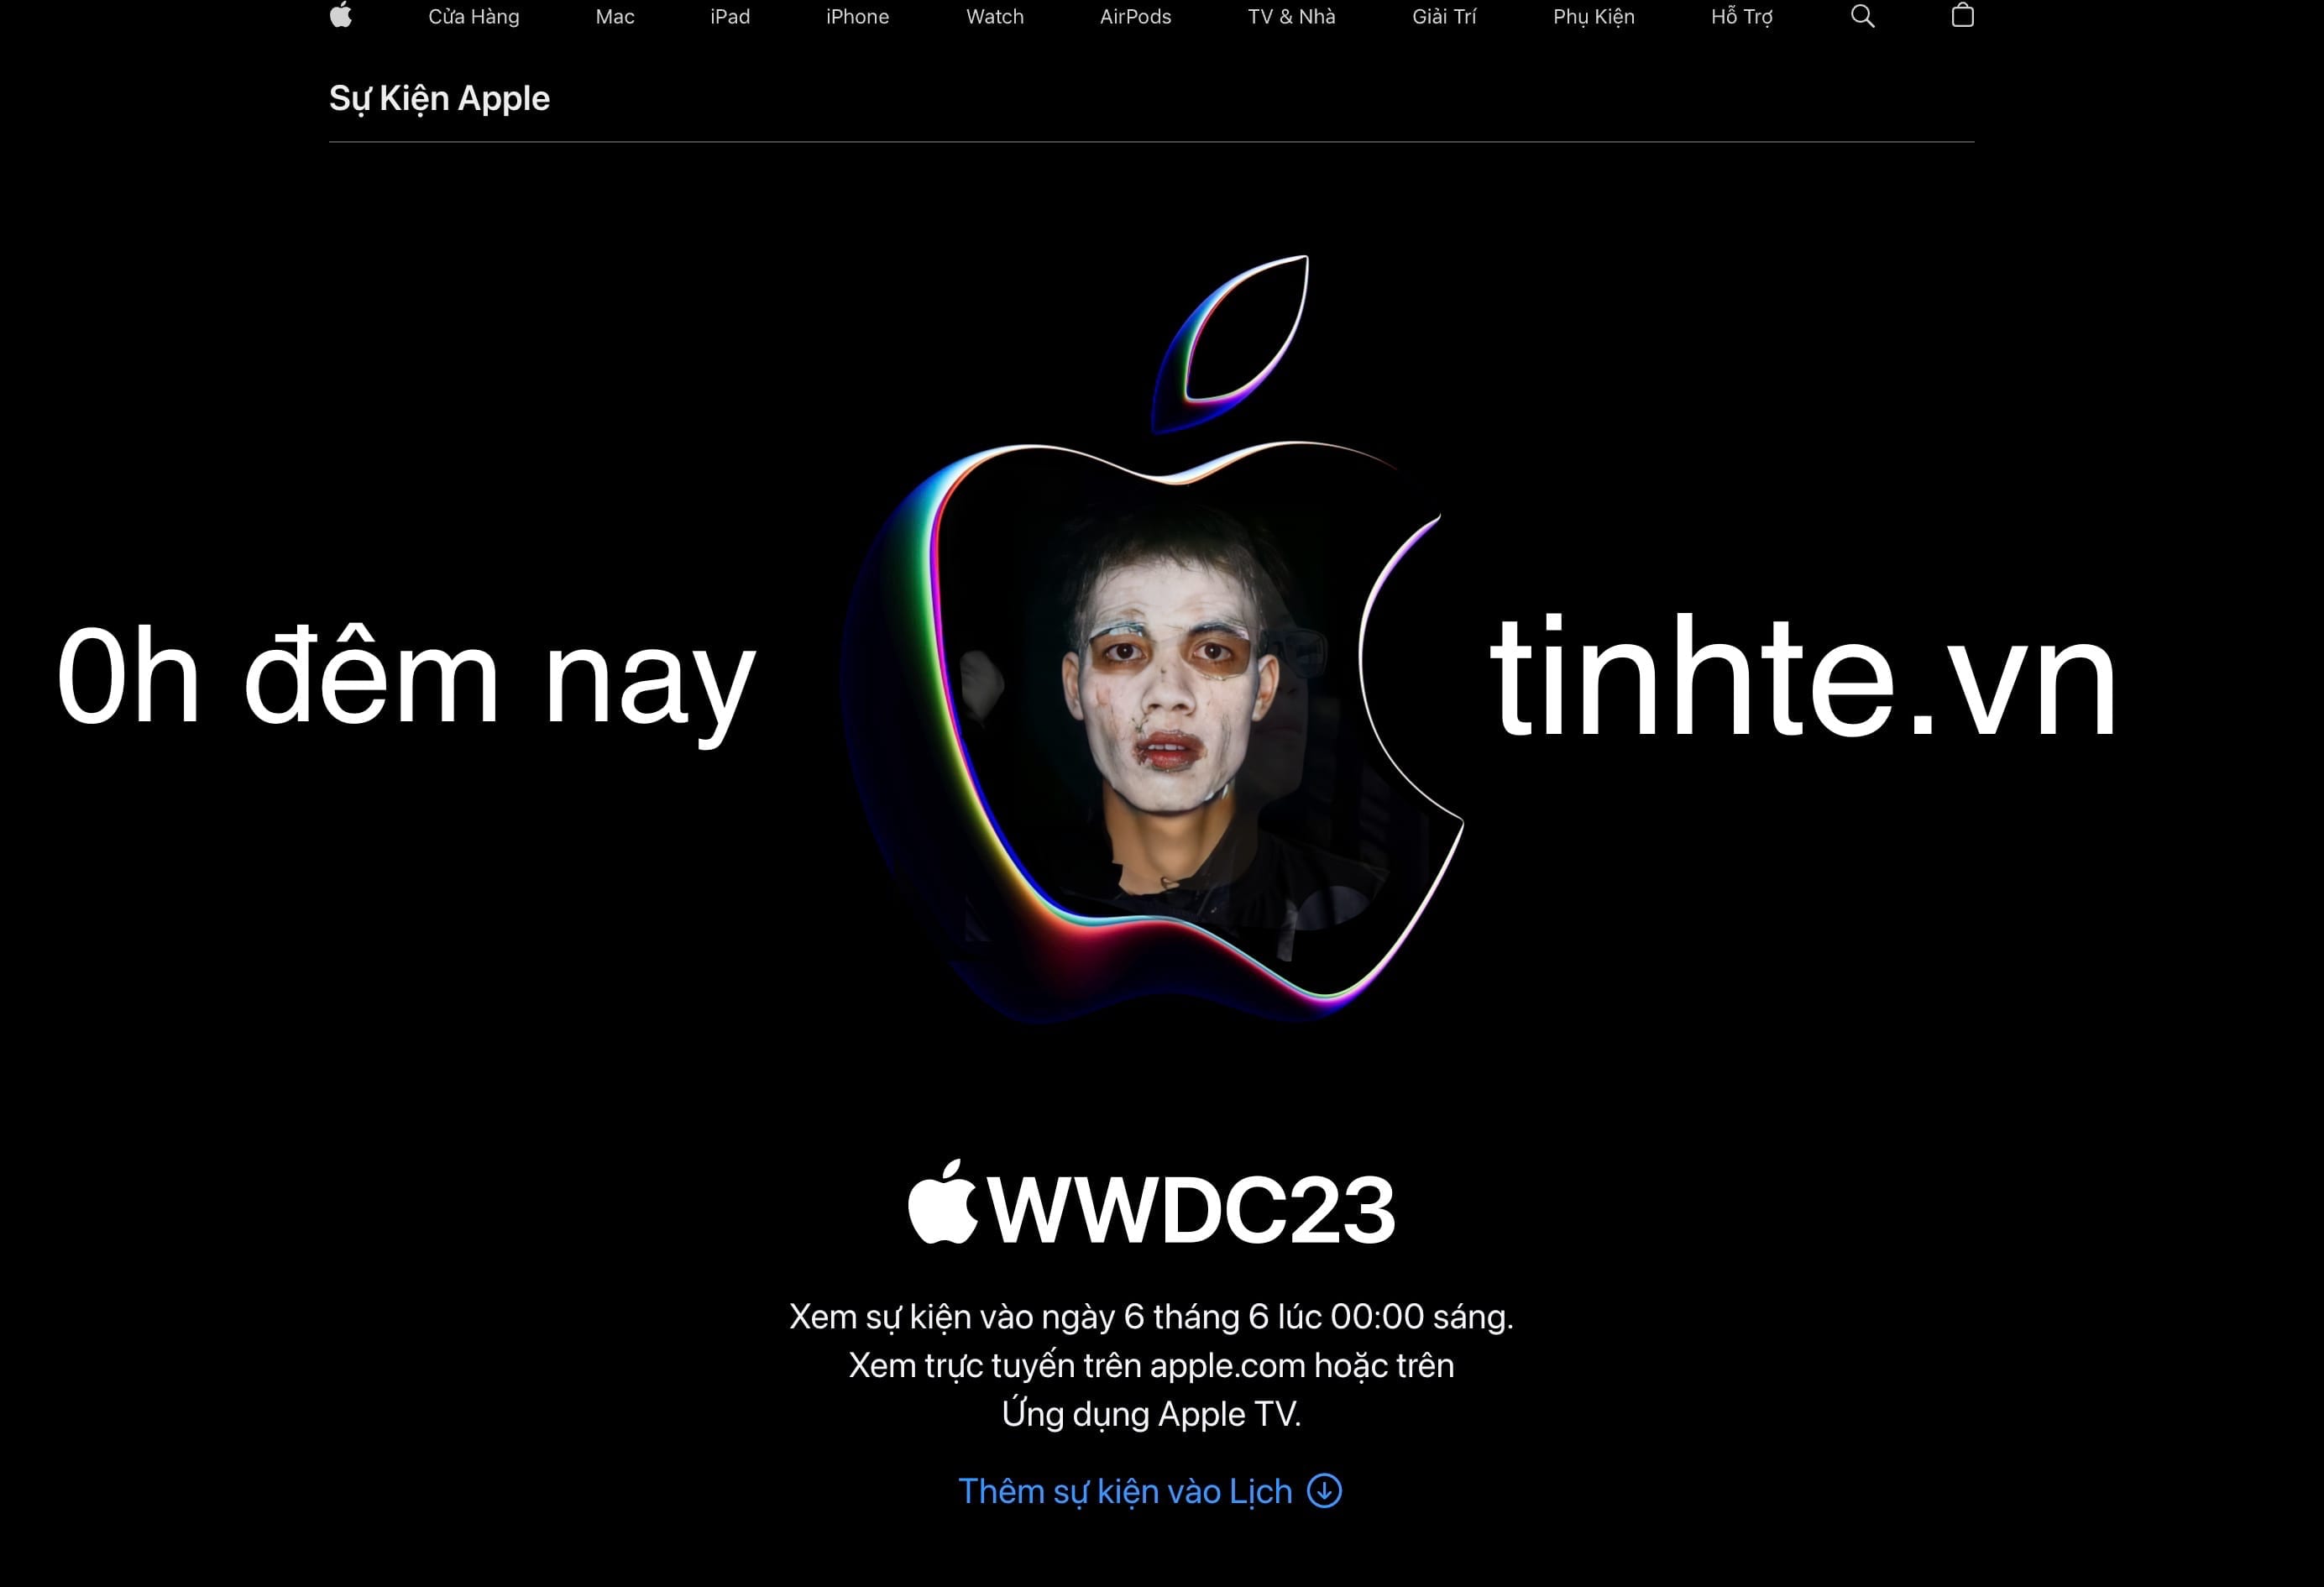 Rủ anh em tối nay thức cùng WWDC23, xem Apple có giới thiệu sản phẩm mới không